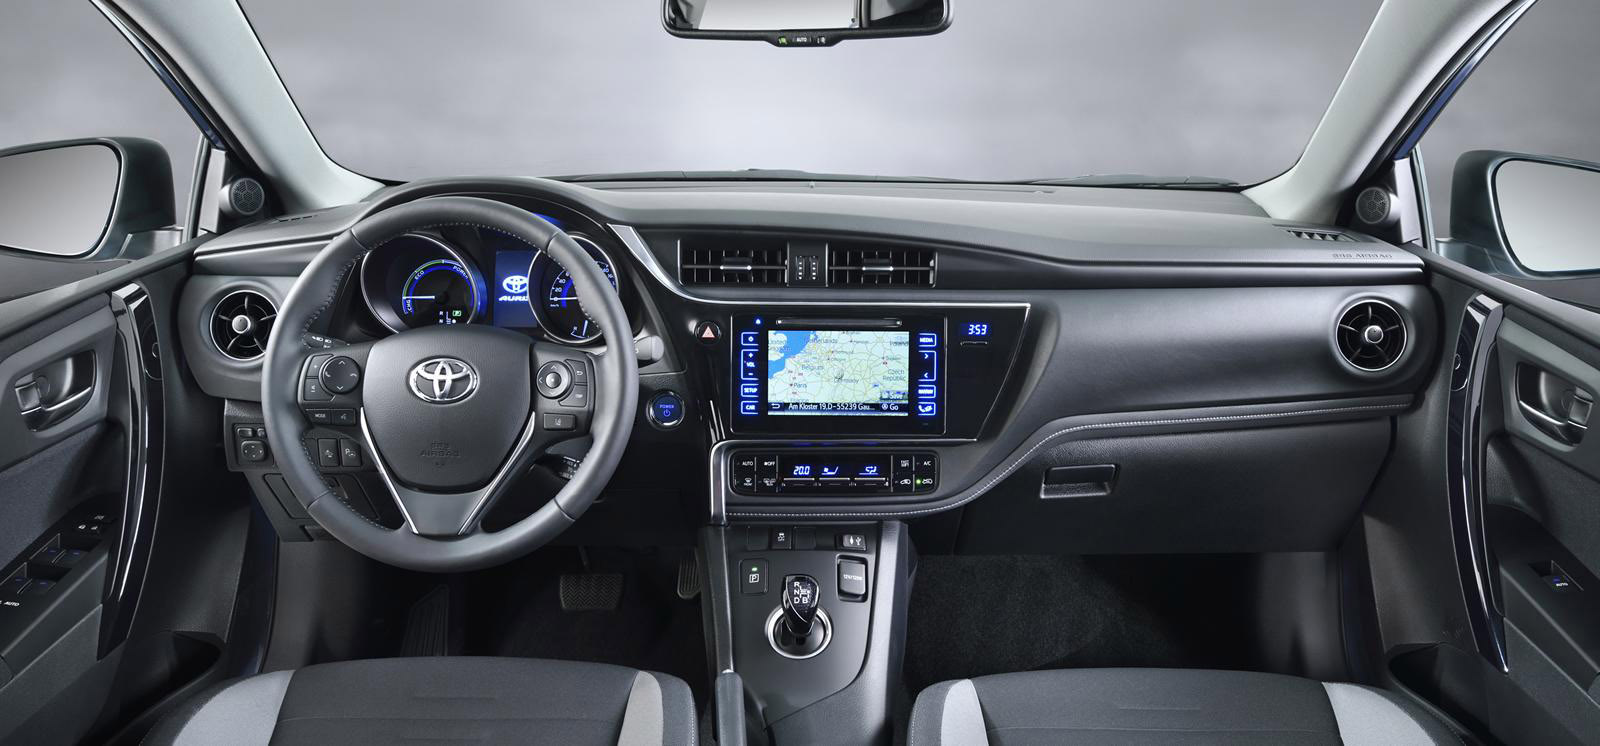 Toyota Auris facelift